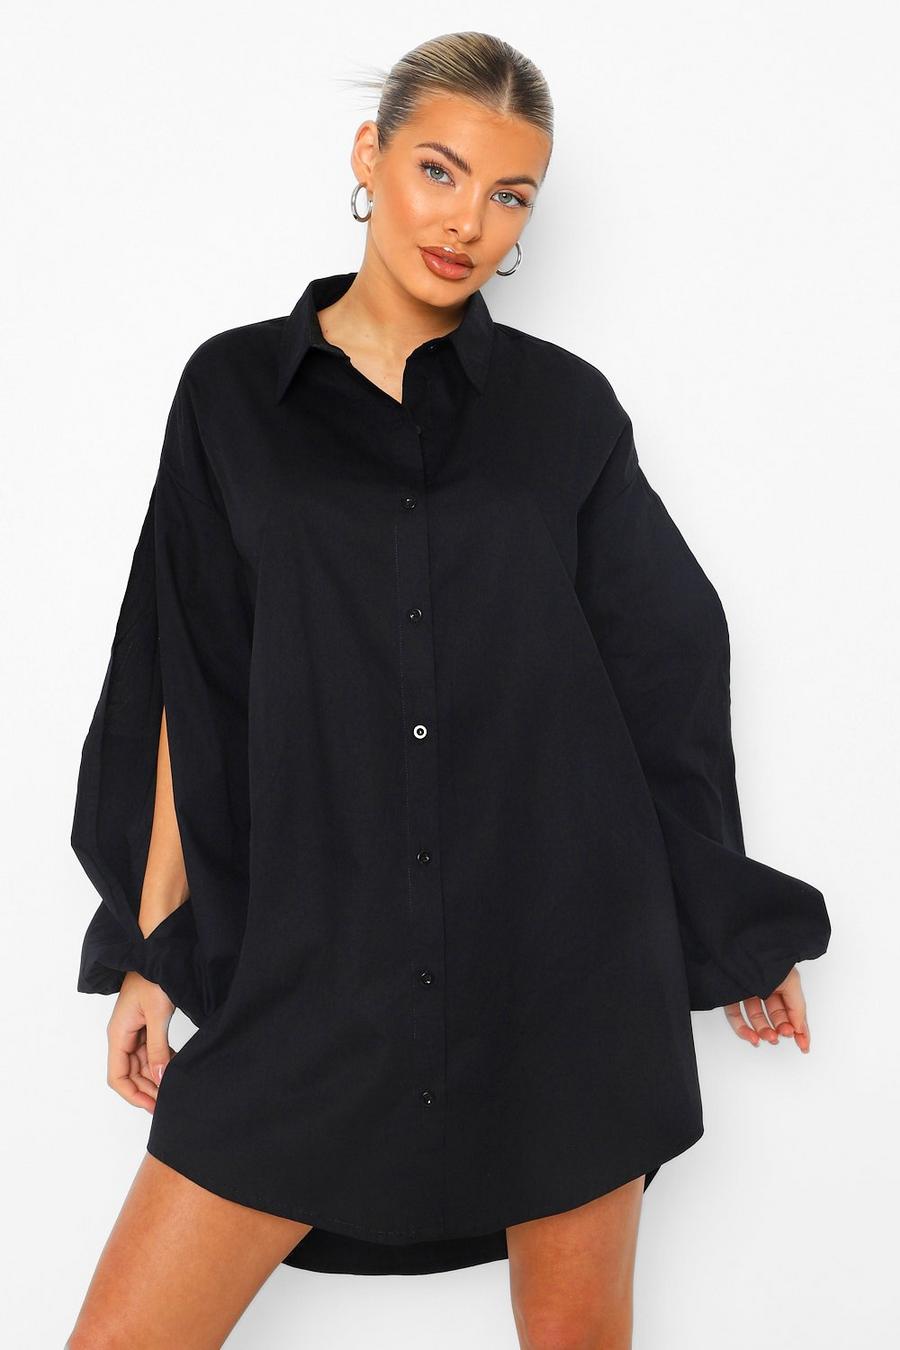 שחור שמלת חולצה עם חולצה עליונה עם שרוולי בלון עם שסע image number 1